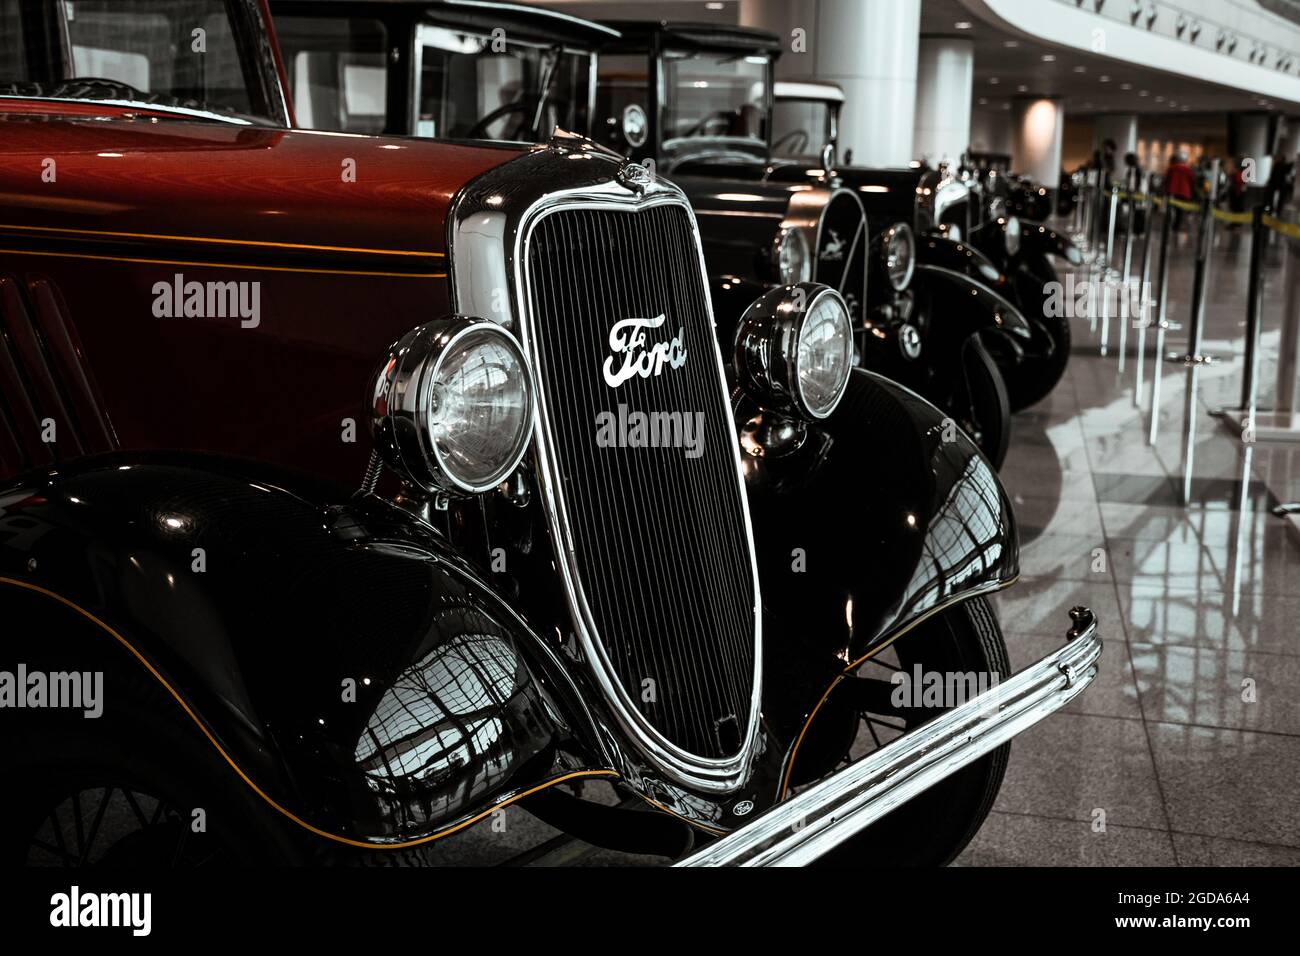 4 juin 2019, Moscou, Russie: Calandre et phares de voiture américaine Ford modèle y 1933. Voitures rétro classiques des années 1930. Banque D'Images